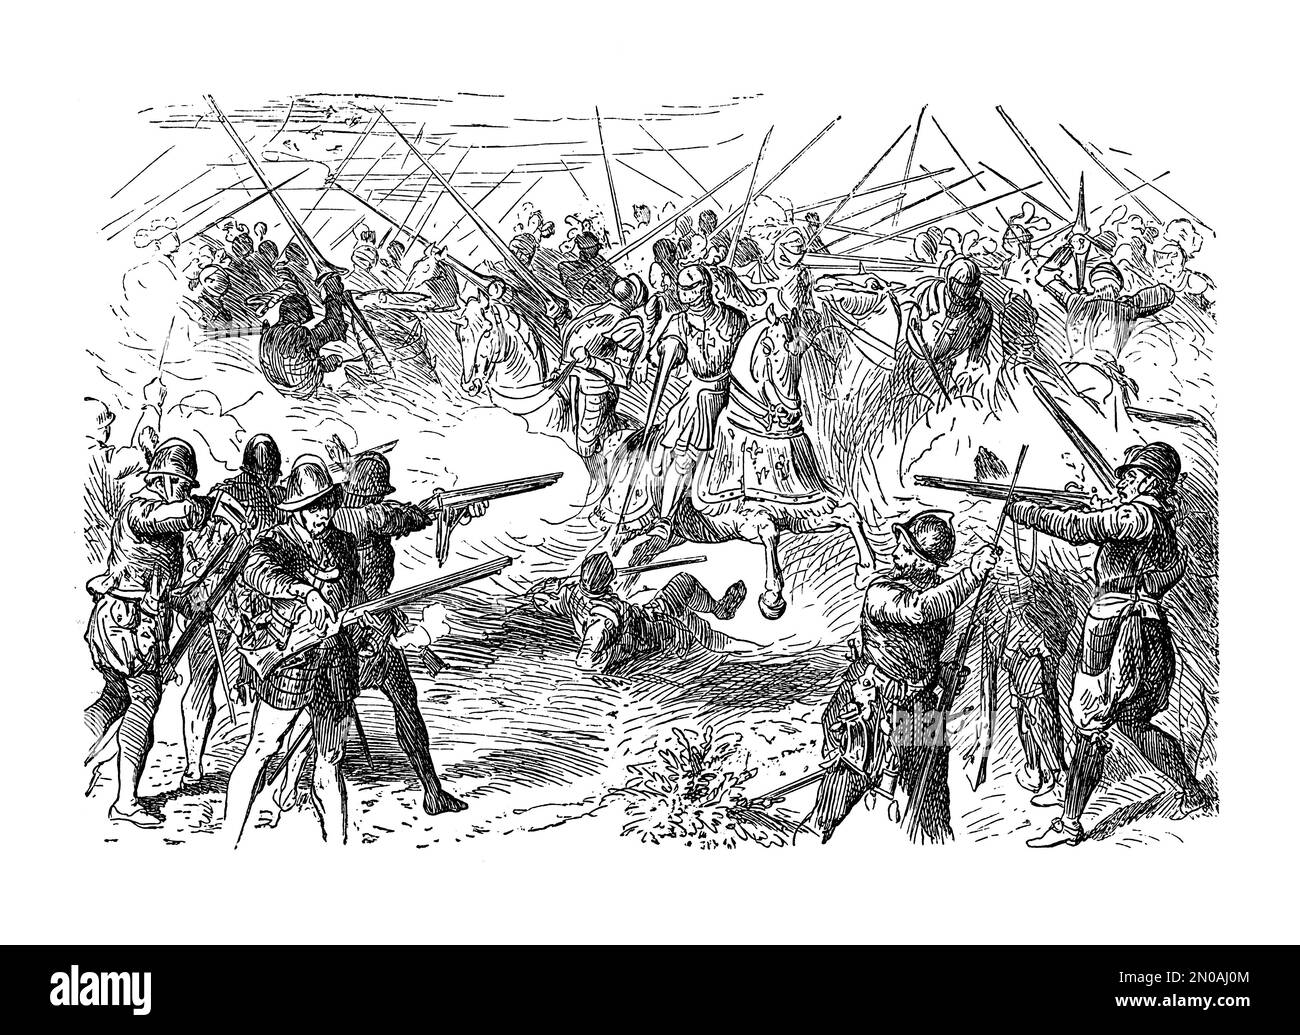 Illustrazione del 19th° secolo della Battaglia di Pavia, combattuta il 24 febbraio 1525. L'esercito spagnolo-imperiale attaccò l'esercito francese al di fuori della città di wal Foto Stock